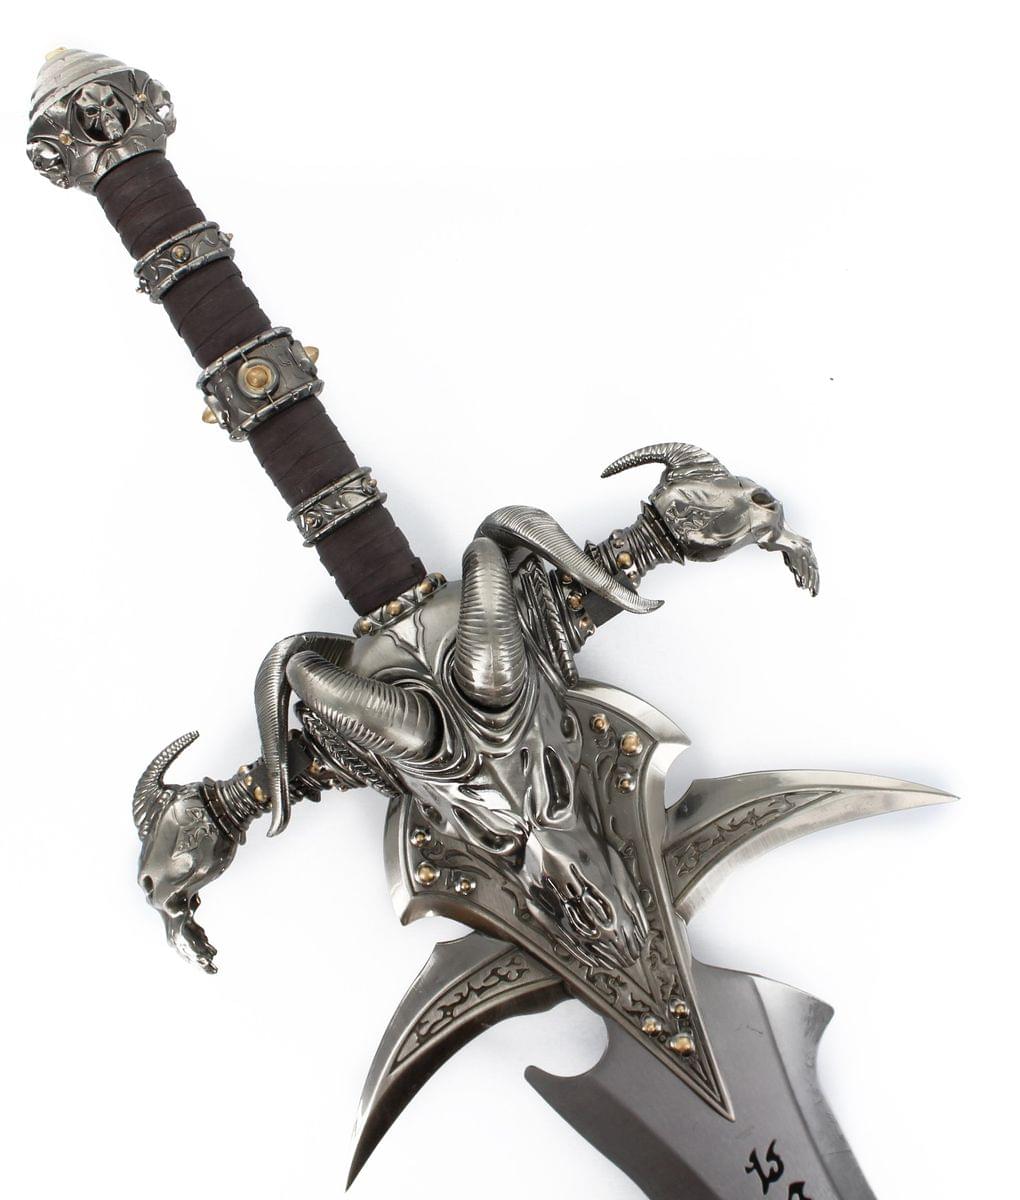 Warcraft Metal Sword With Display Plaque